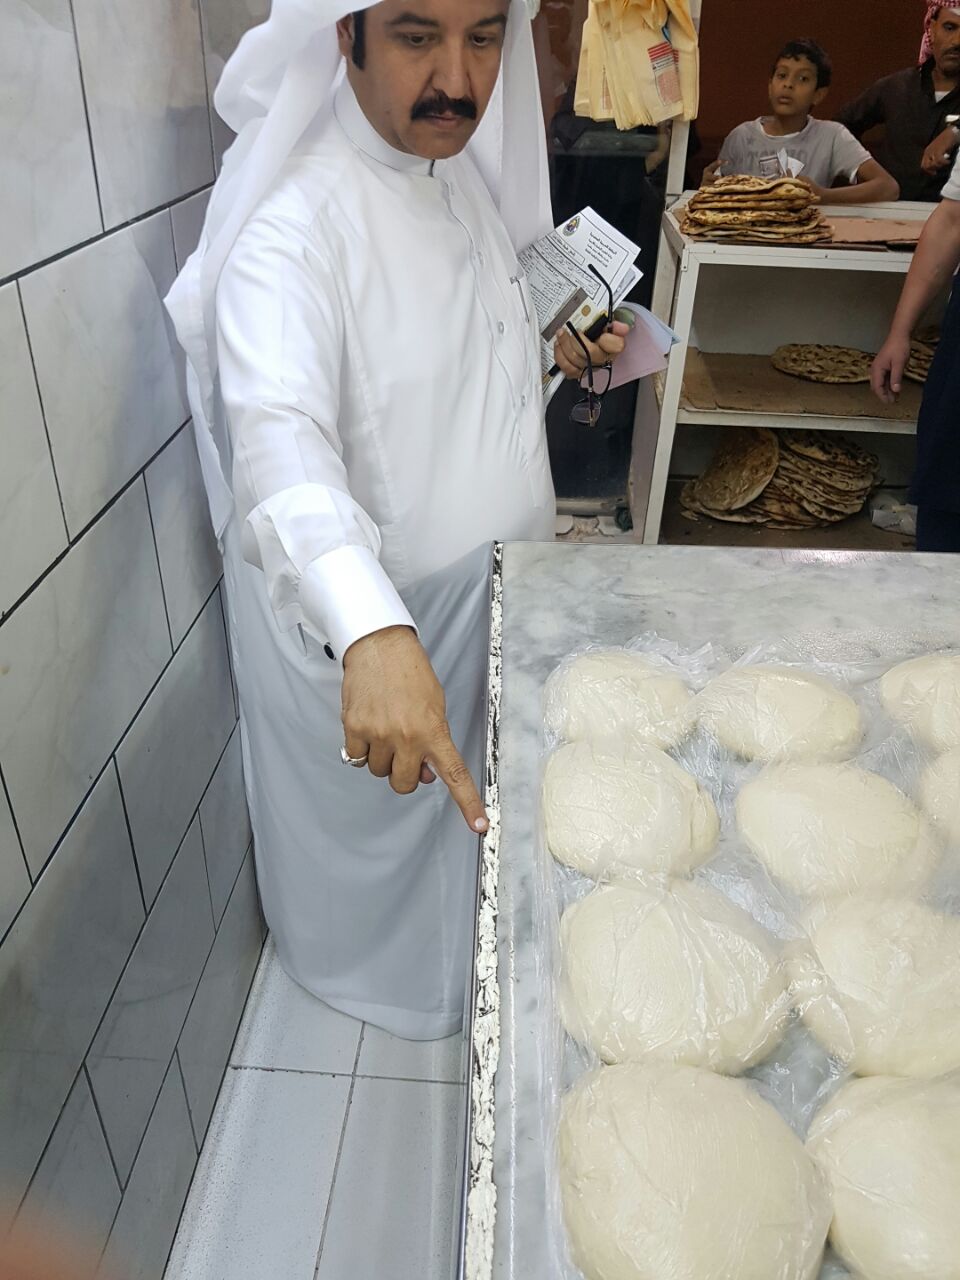 بلدية خميس مشيط توضح حقيقة سلقون مخبز “القرموشي” بطريق المدينة العسكرية